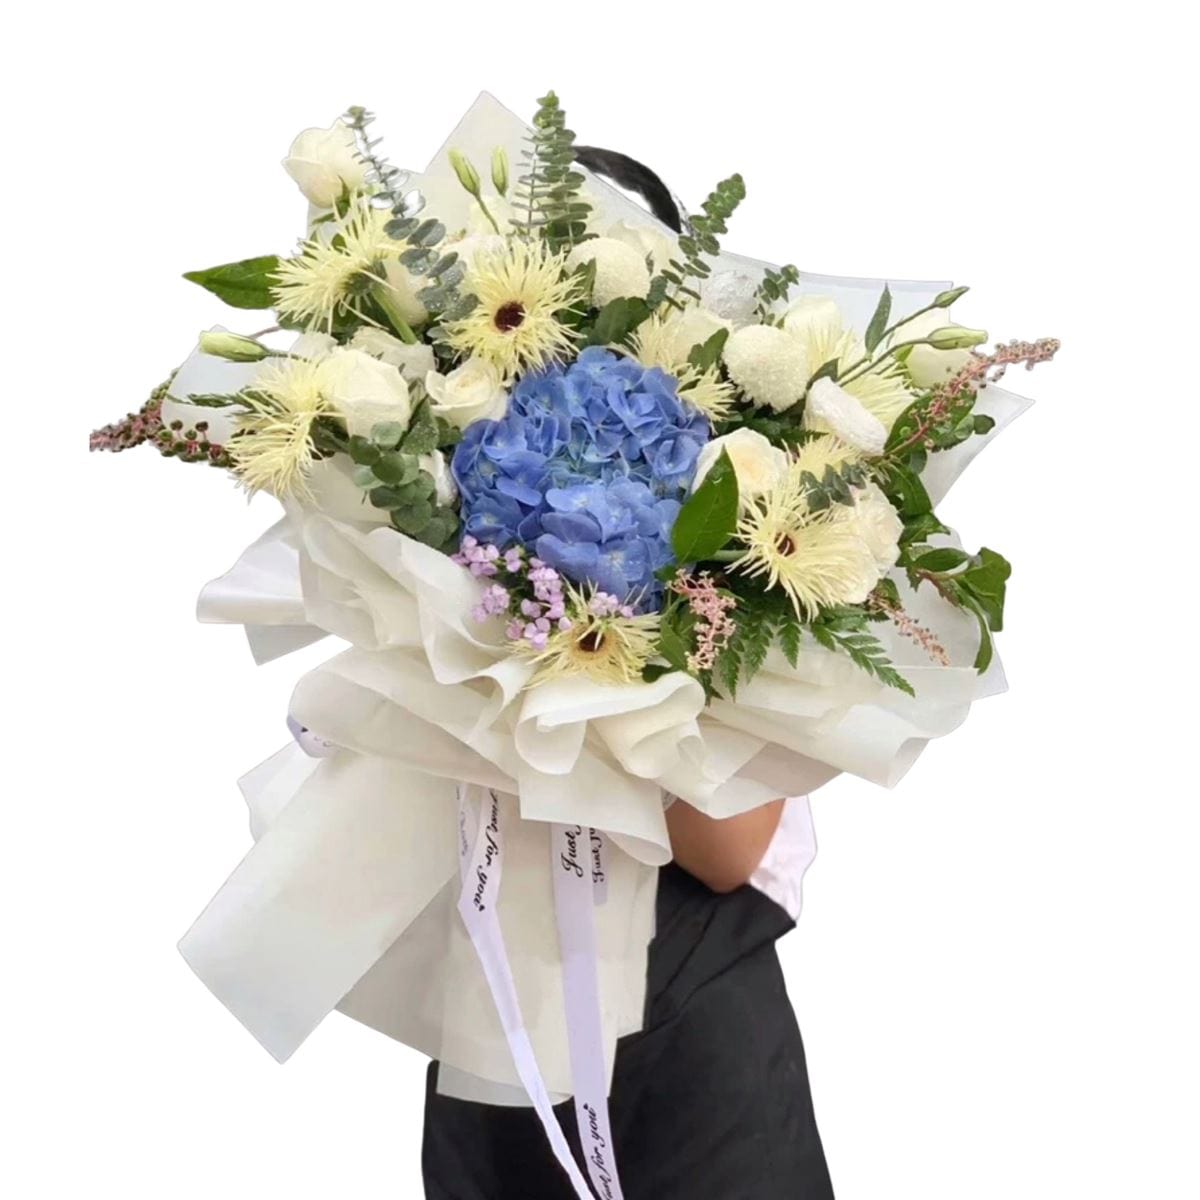 Alluring Elegance - Flower - Preserved Flowers & Fresh Flower Florist Gift Store